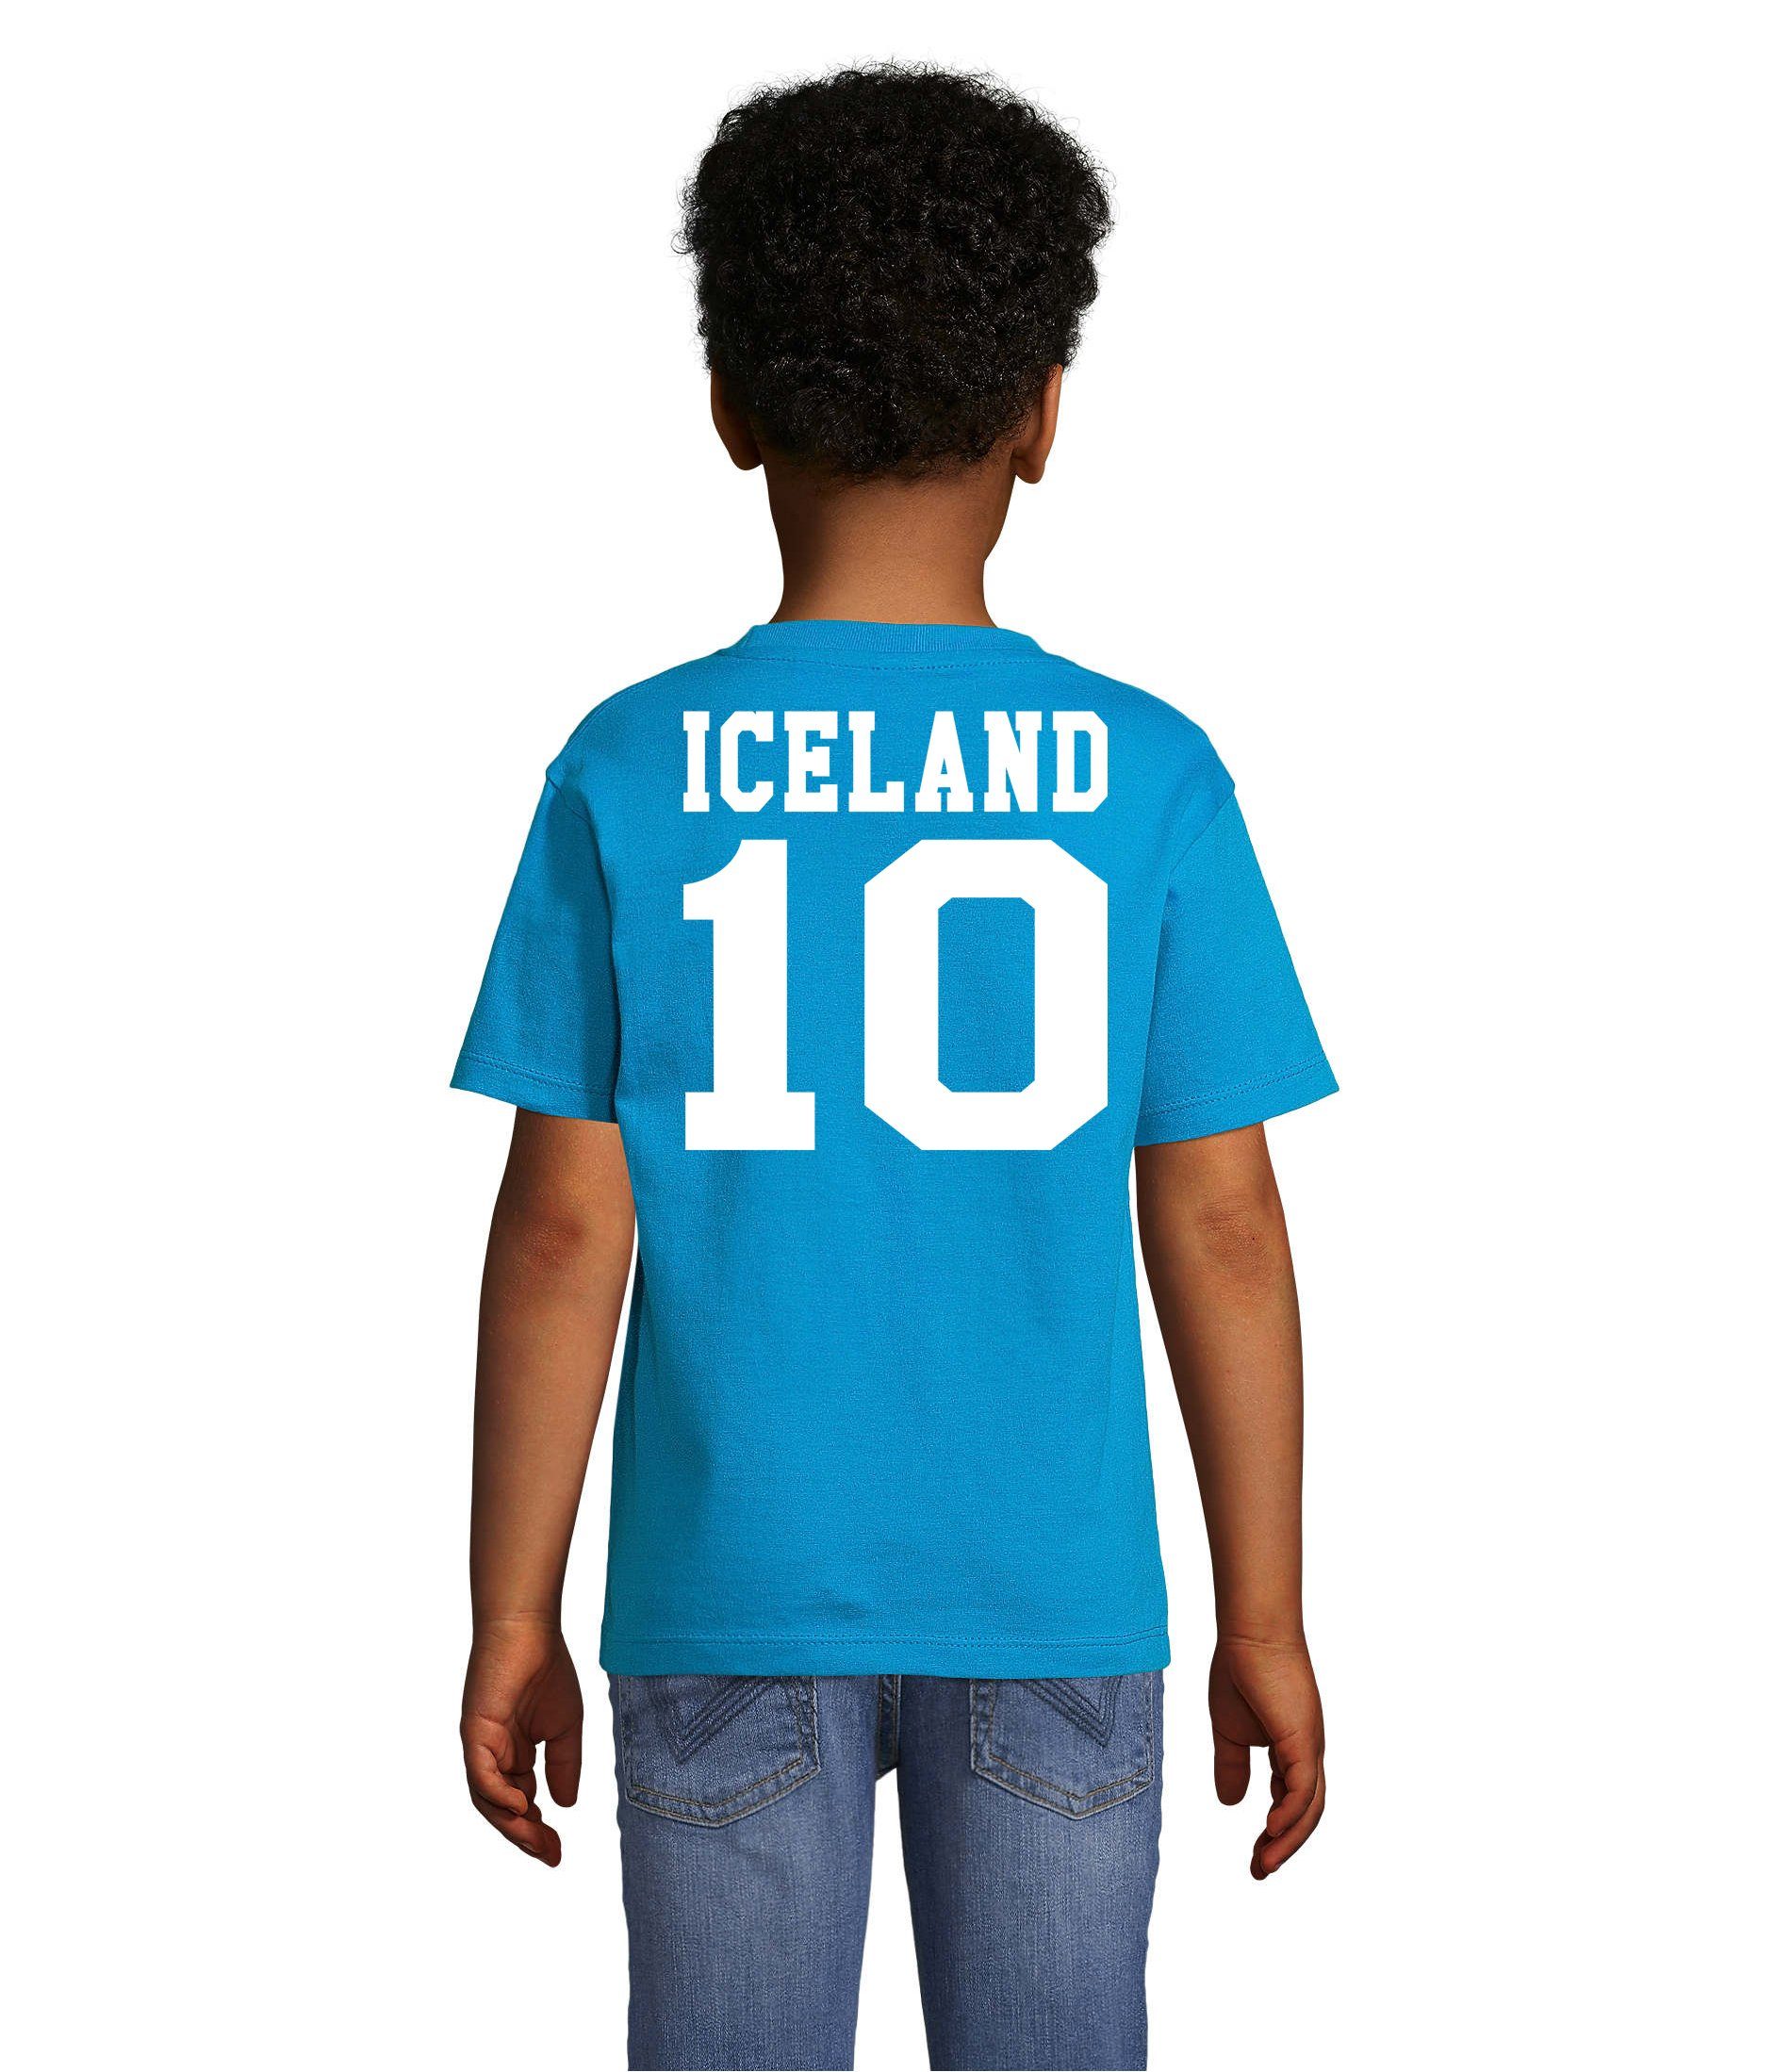 Blondie & Brownie T-Shirt Kinder Handball Trikot Meister Sport WM Iceland Weiss/Blau Island EM Fußball